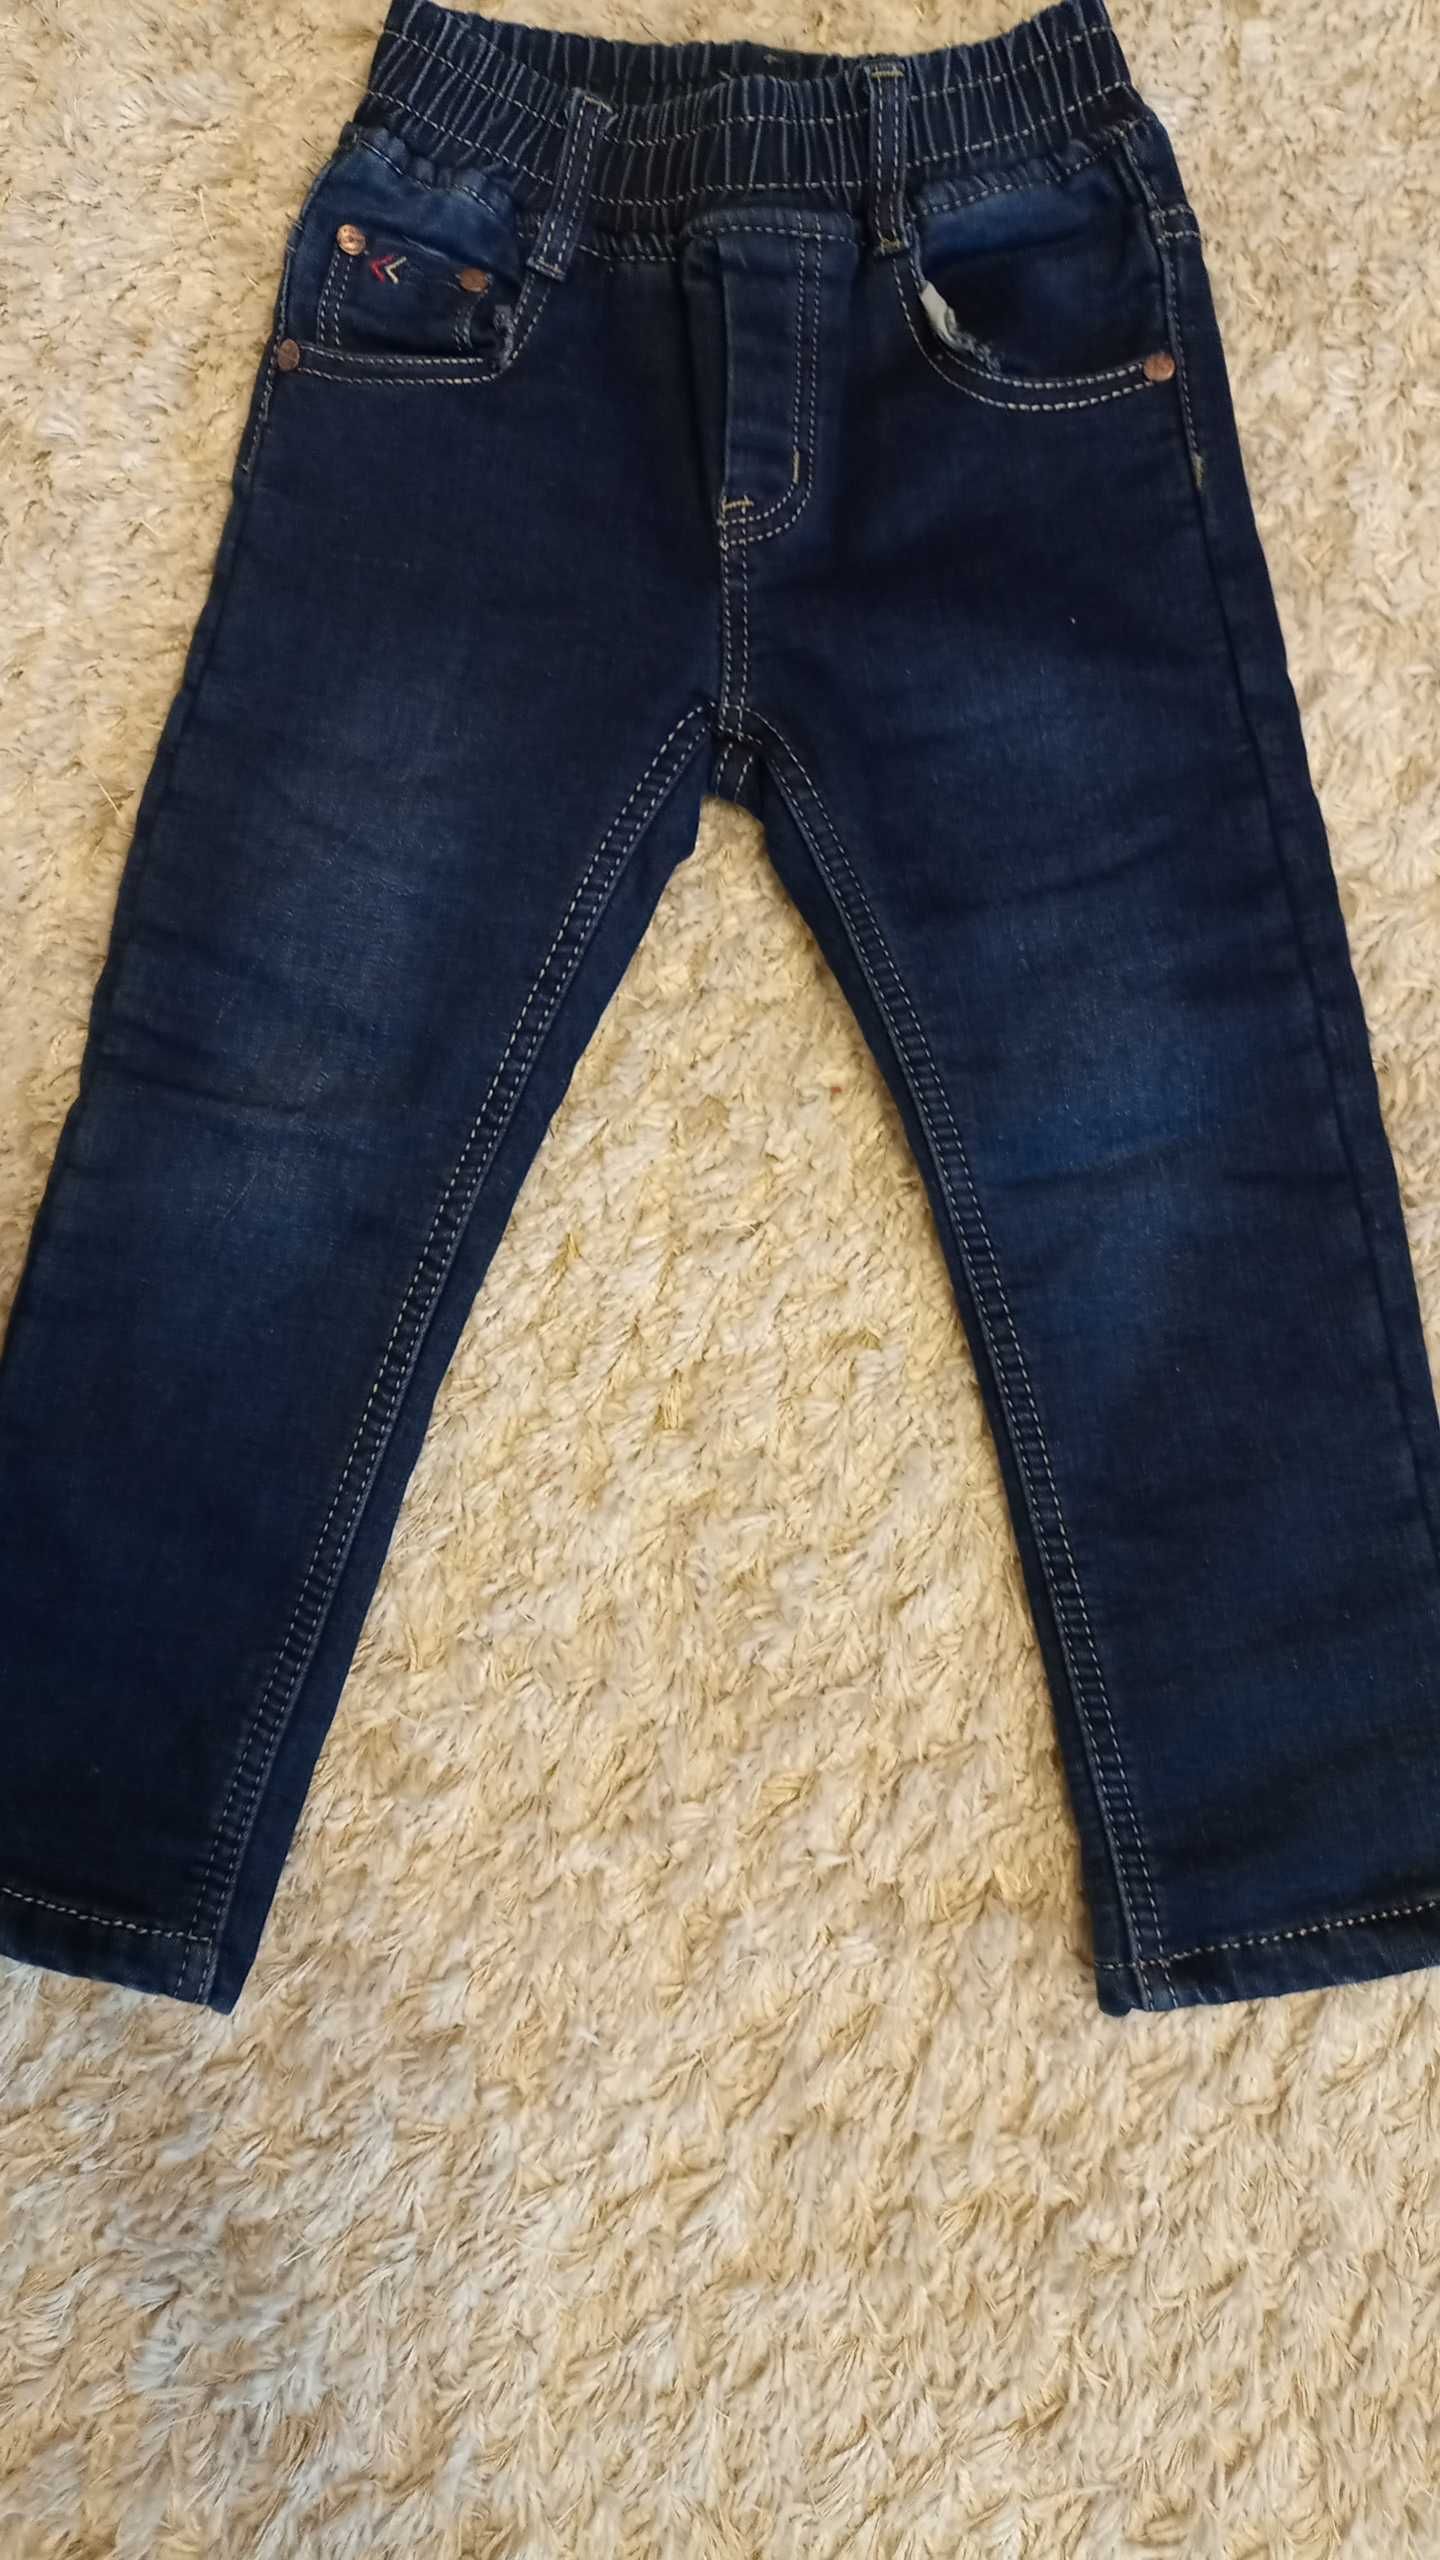 Spodnie jeans ocieplane r. 98/104